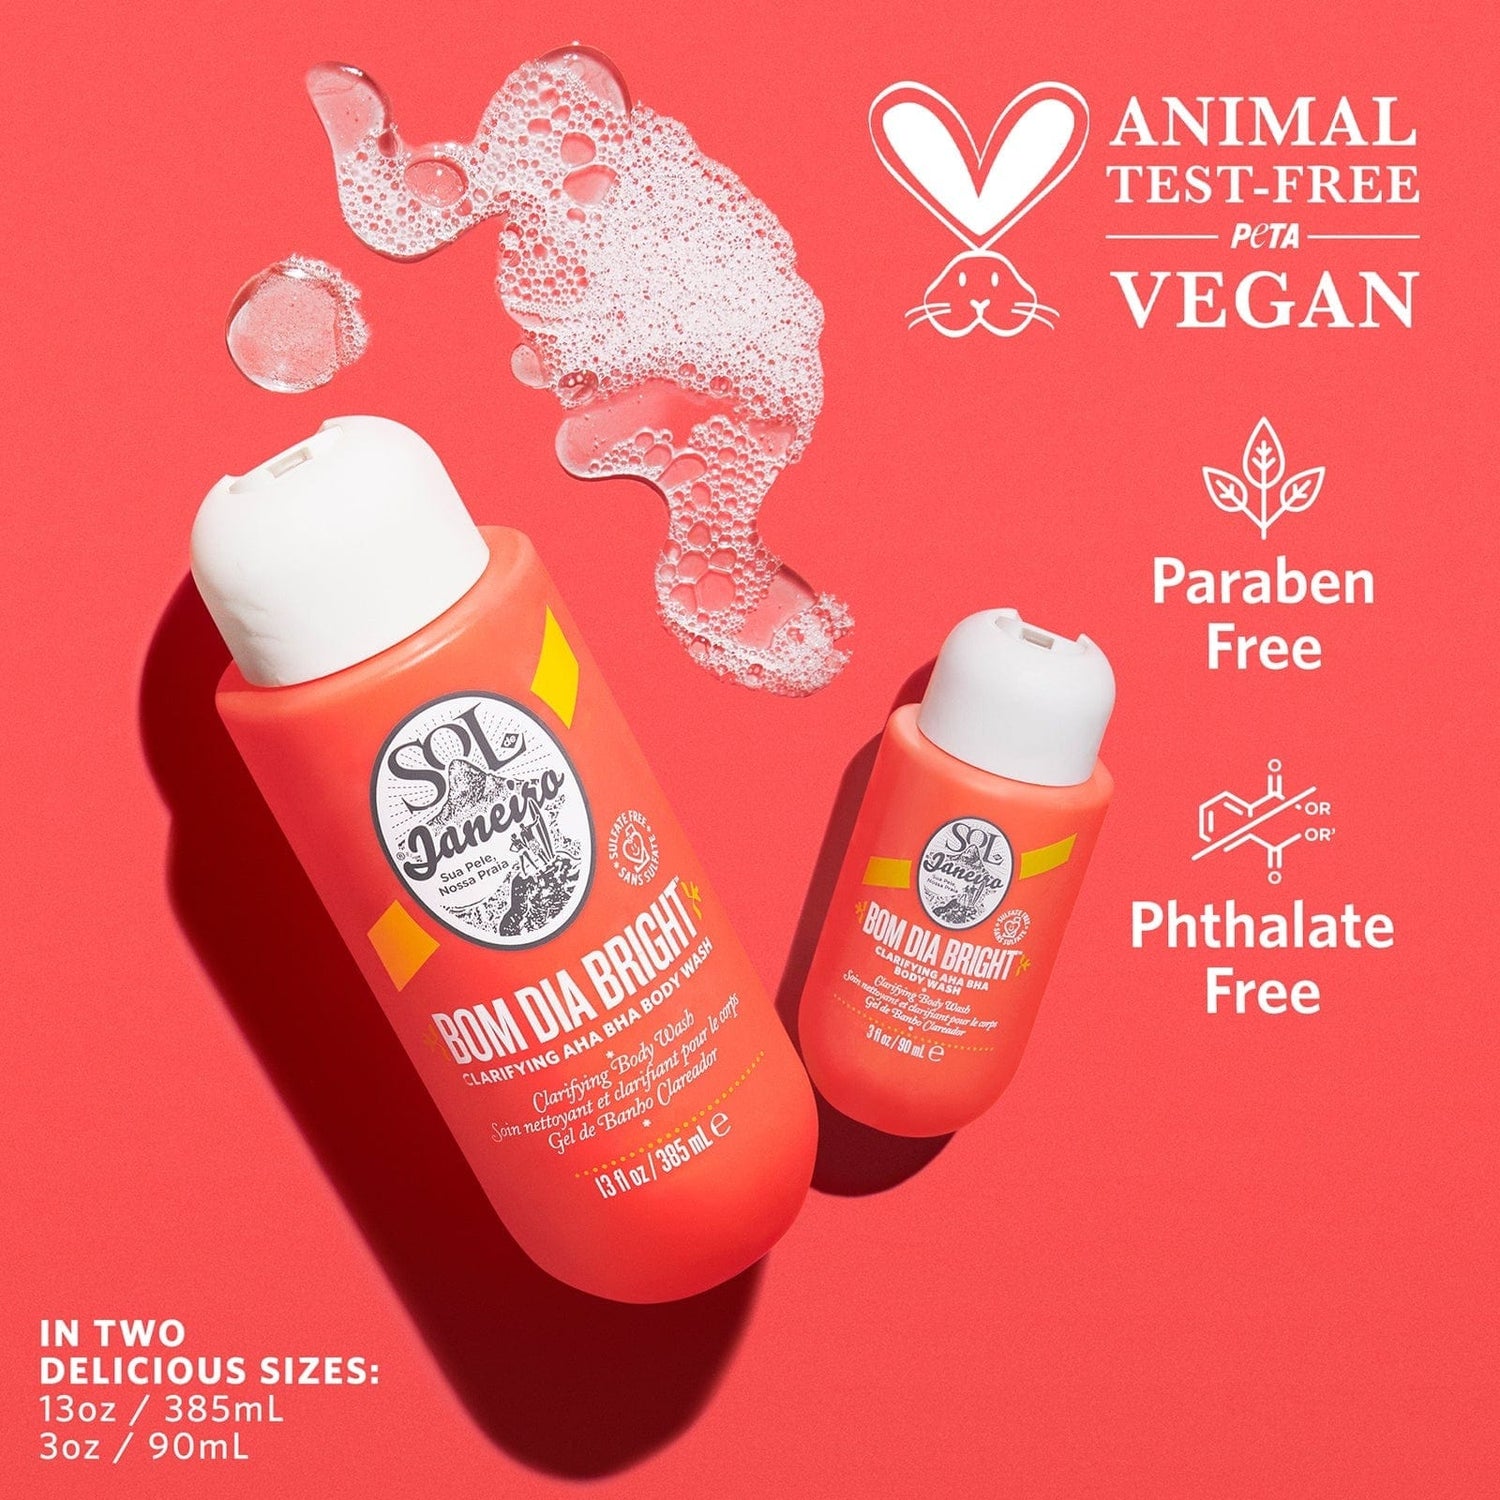 Animal test-free PETA vegan. Free of parabens and phthalates